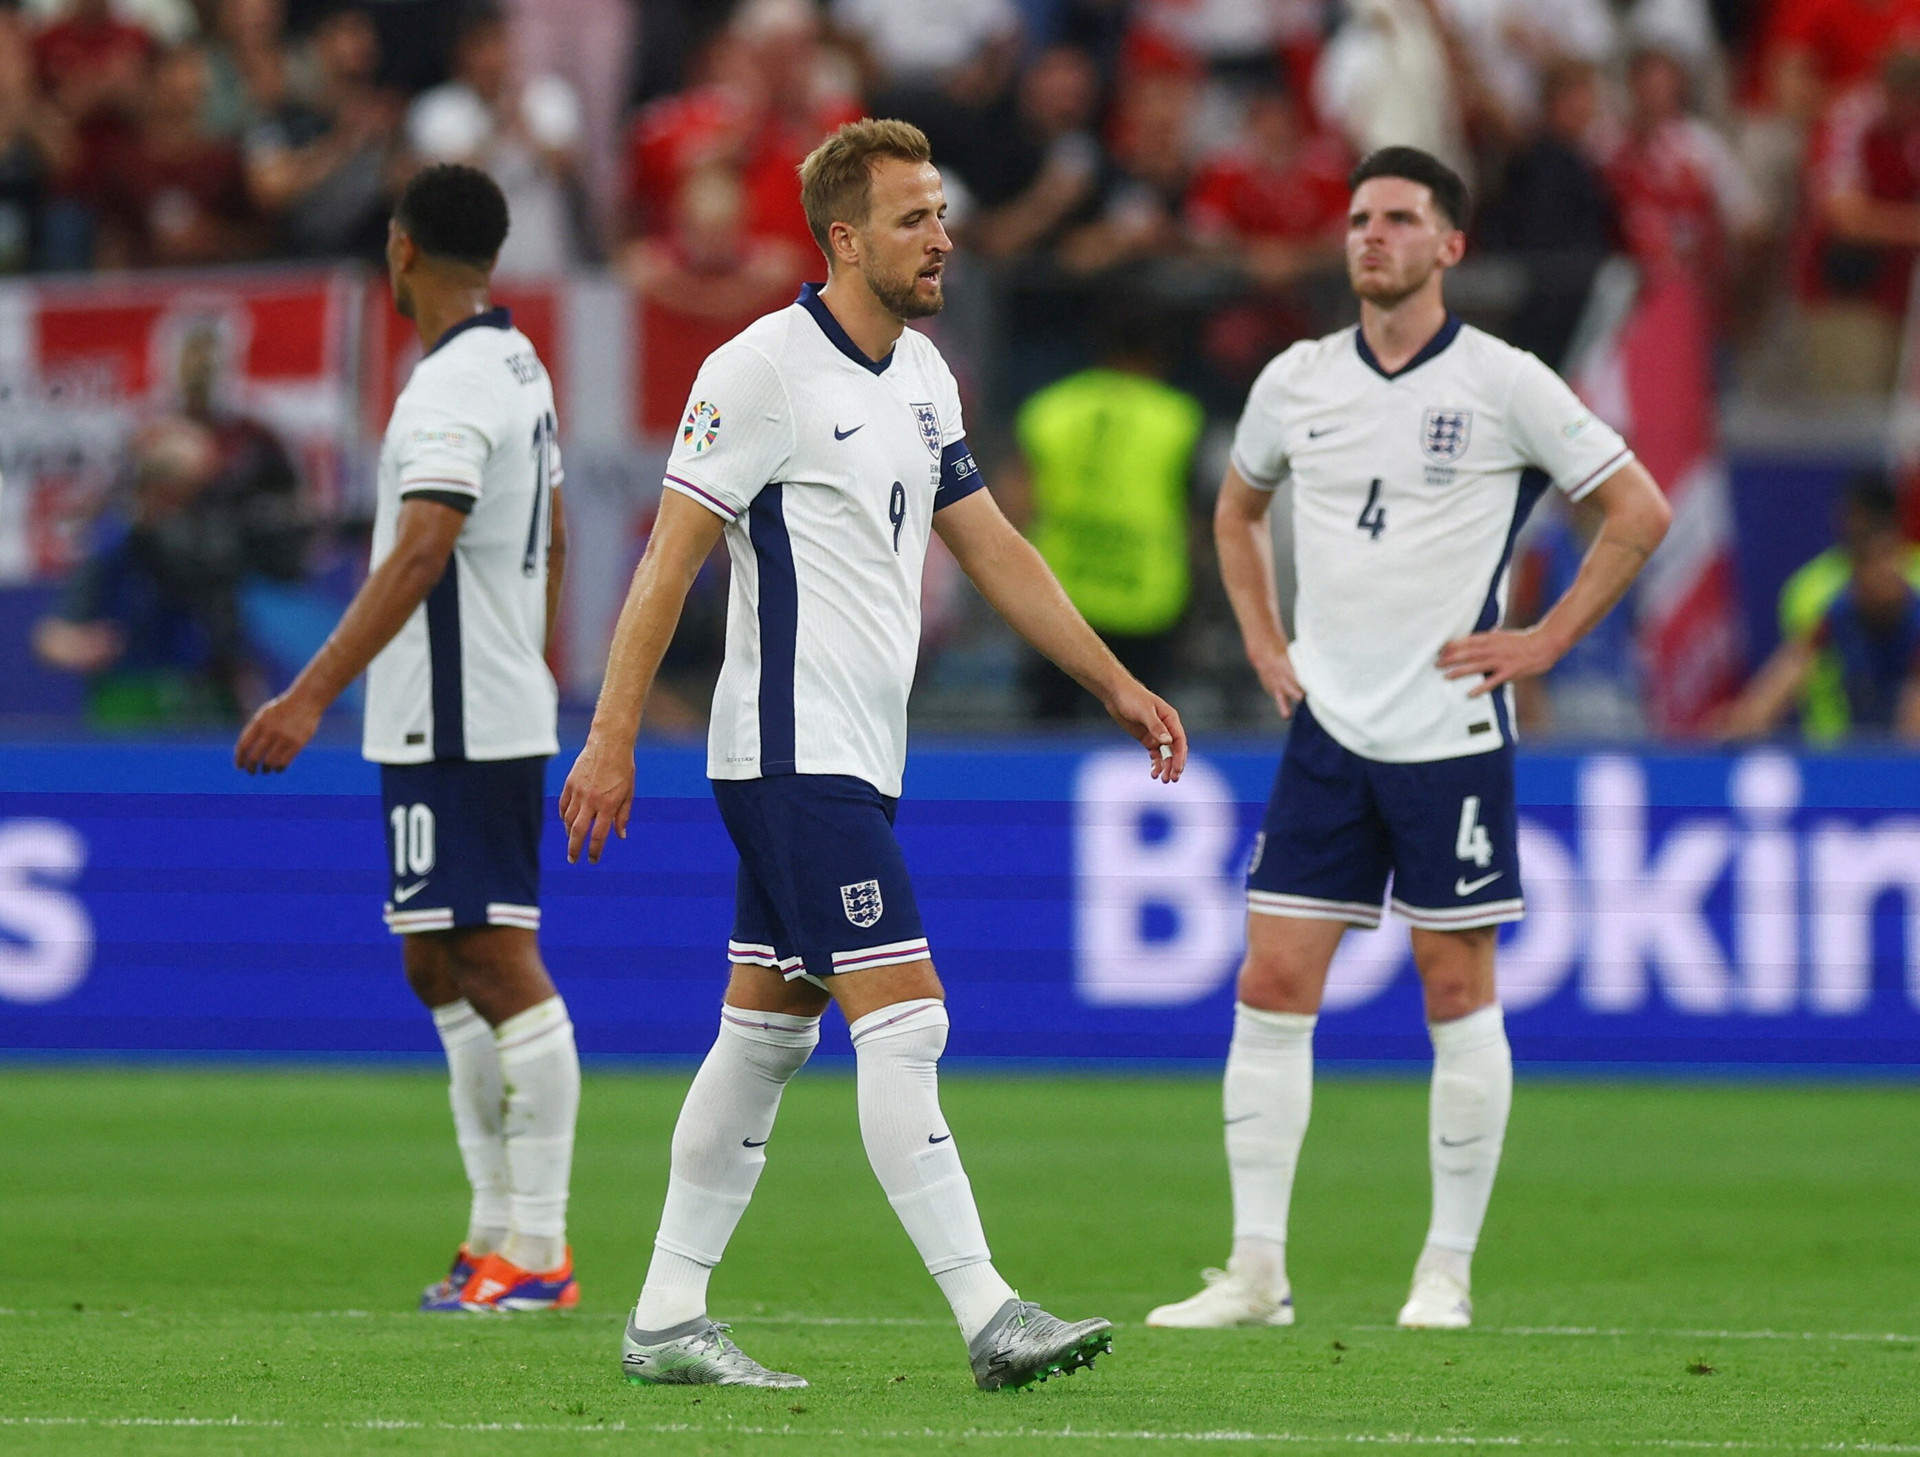 Tuyển Anh thi đấu thiếu thuyết phục trong hiệp 2, đành chấp nhận kết quả hòa 1-1 trước Đan Mạch.